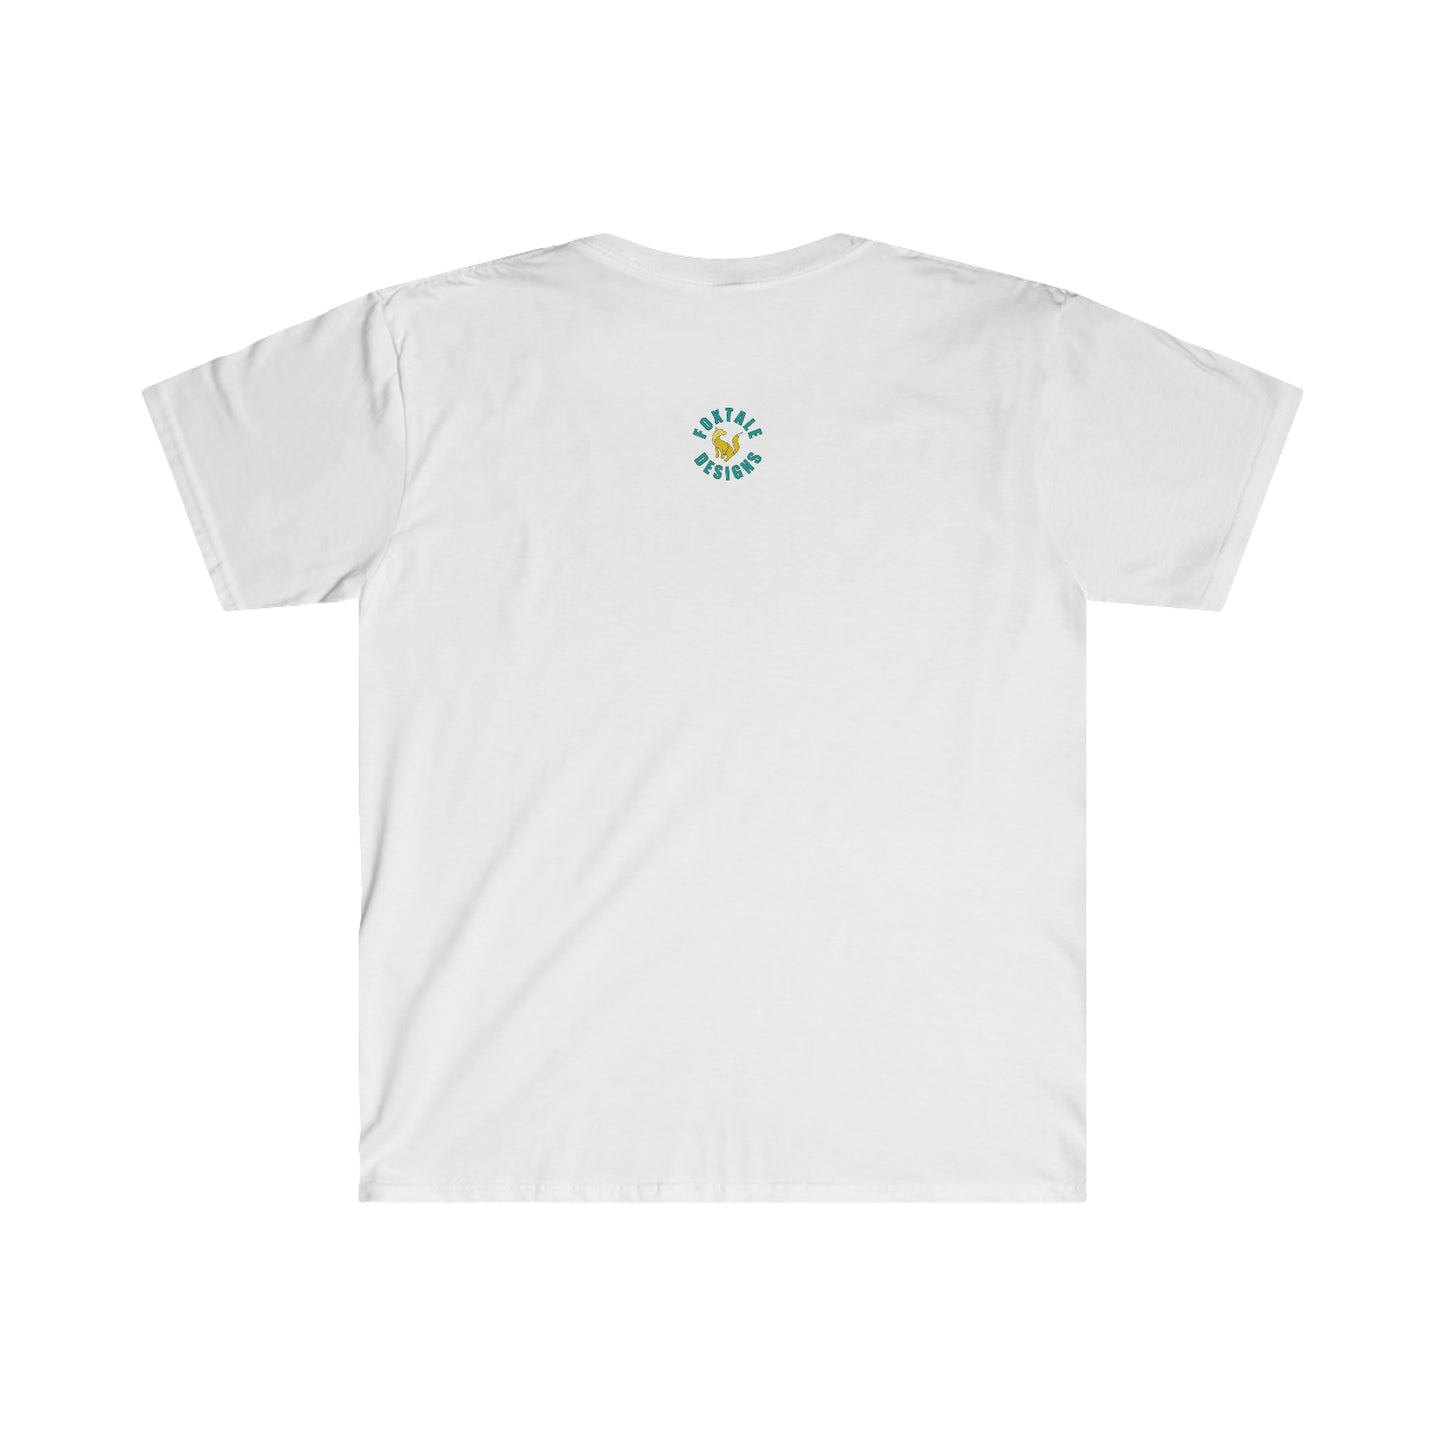 904 Unisex Softstyle T-Shirt